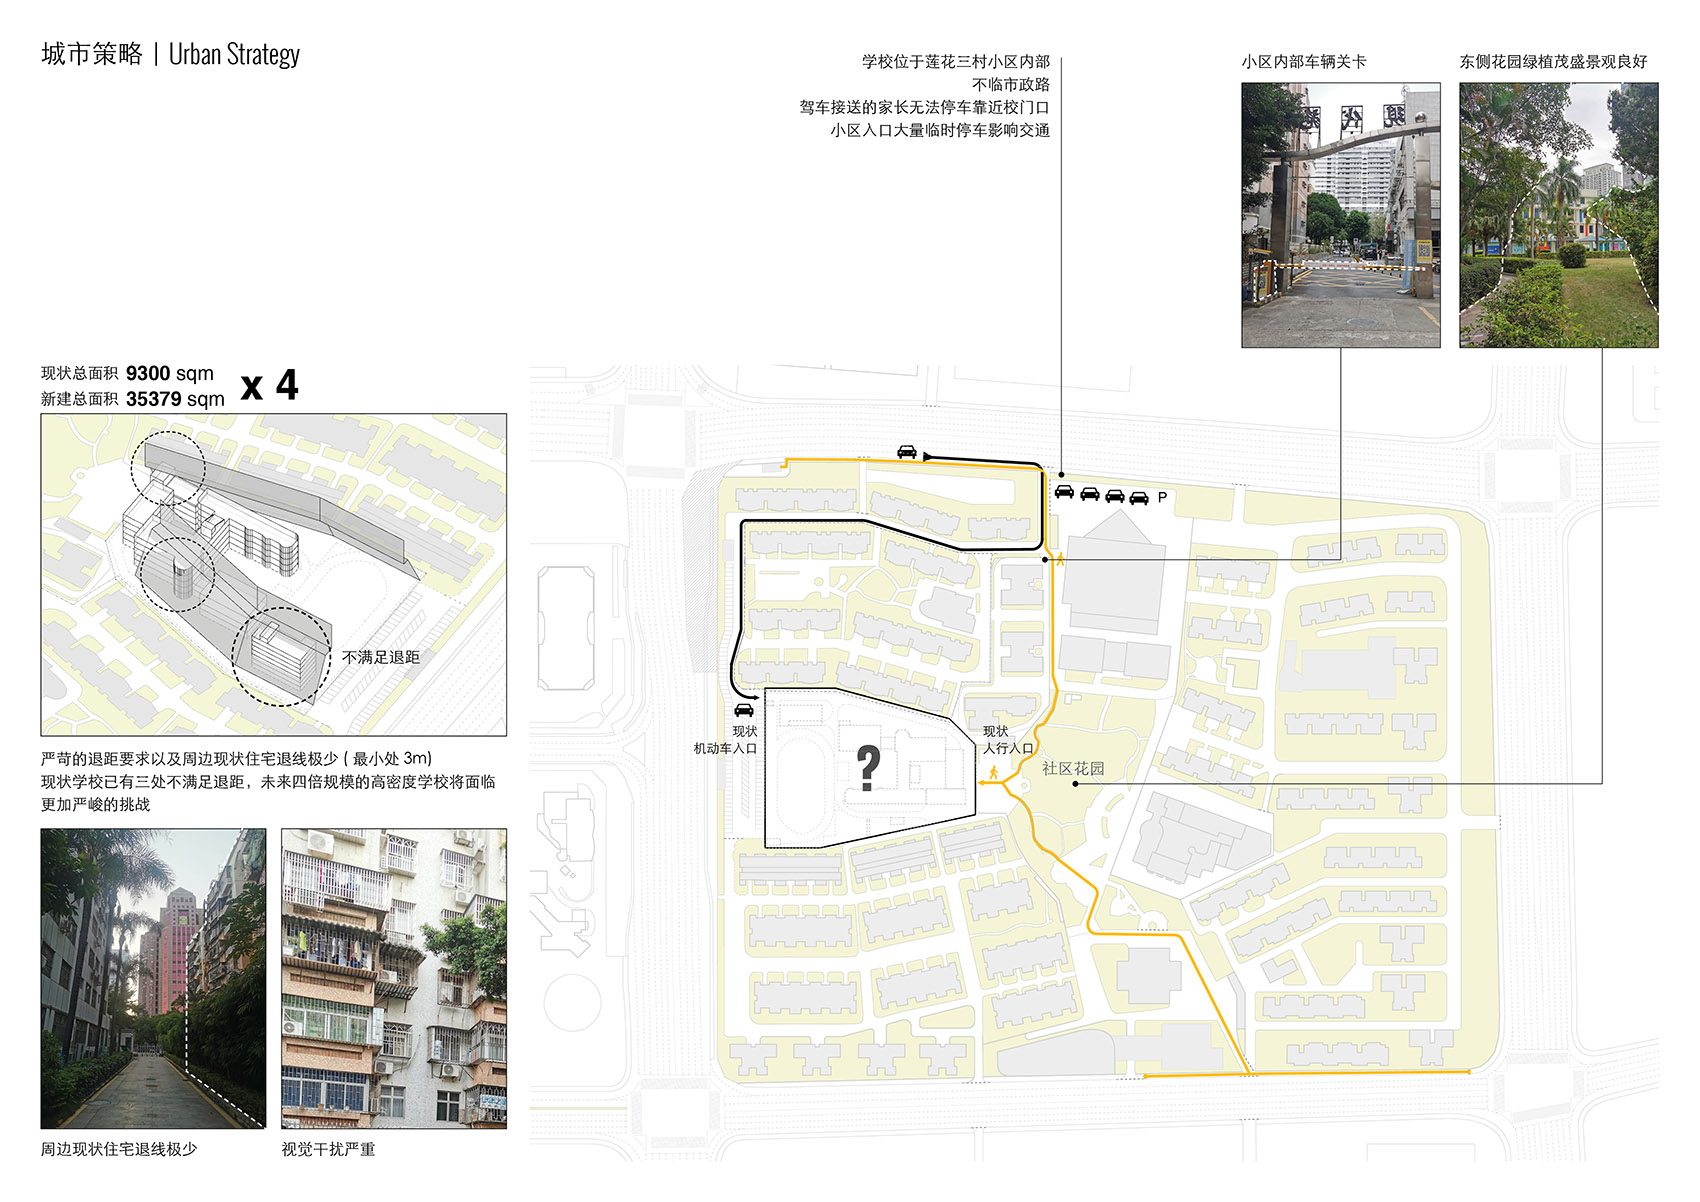 重叠校园：莲花小学校园设计，深圳/高密度垂直分区式校园-71